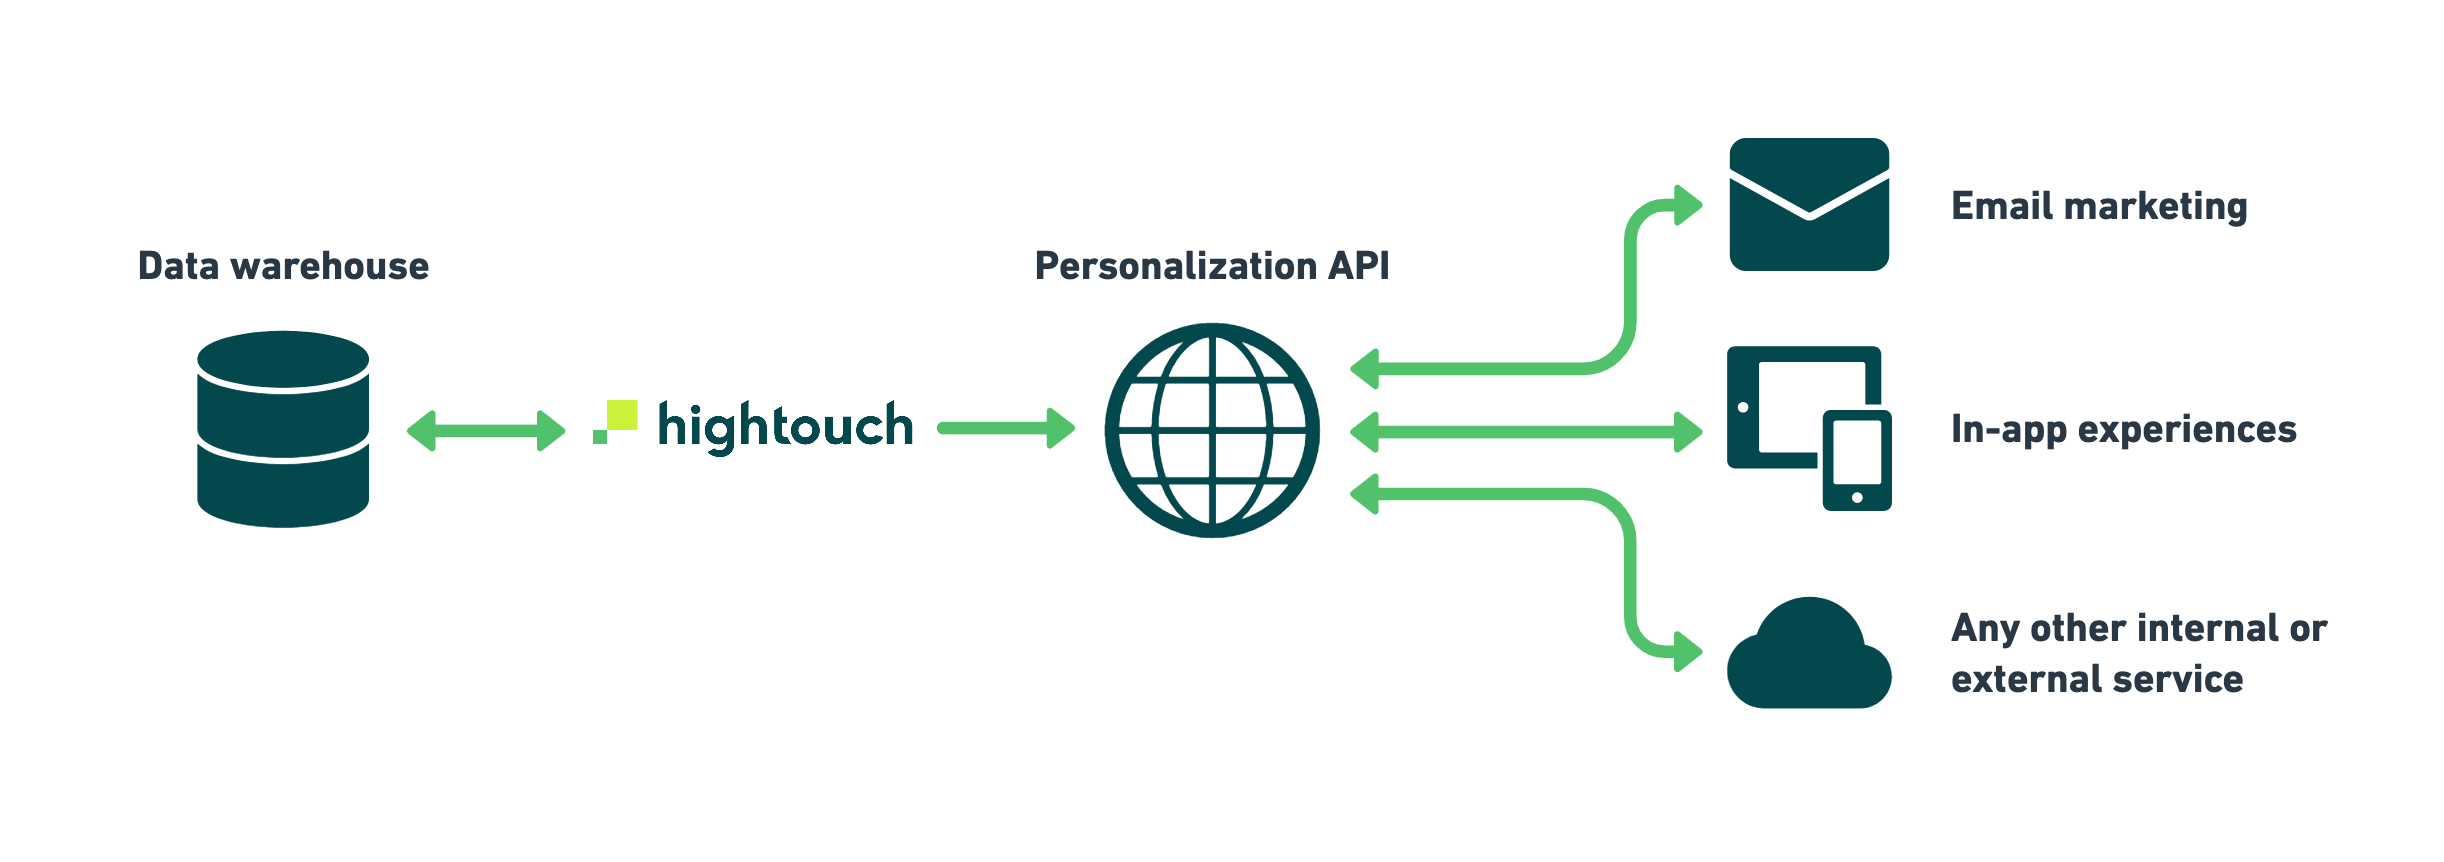 Personalization API Architecture